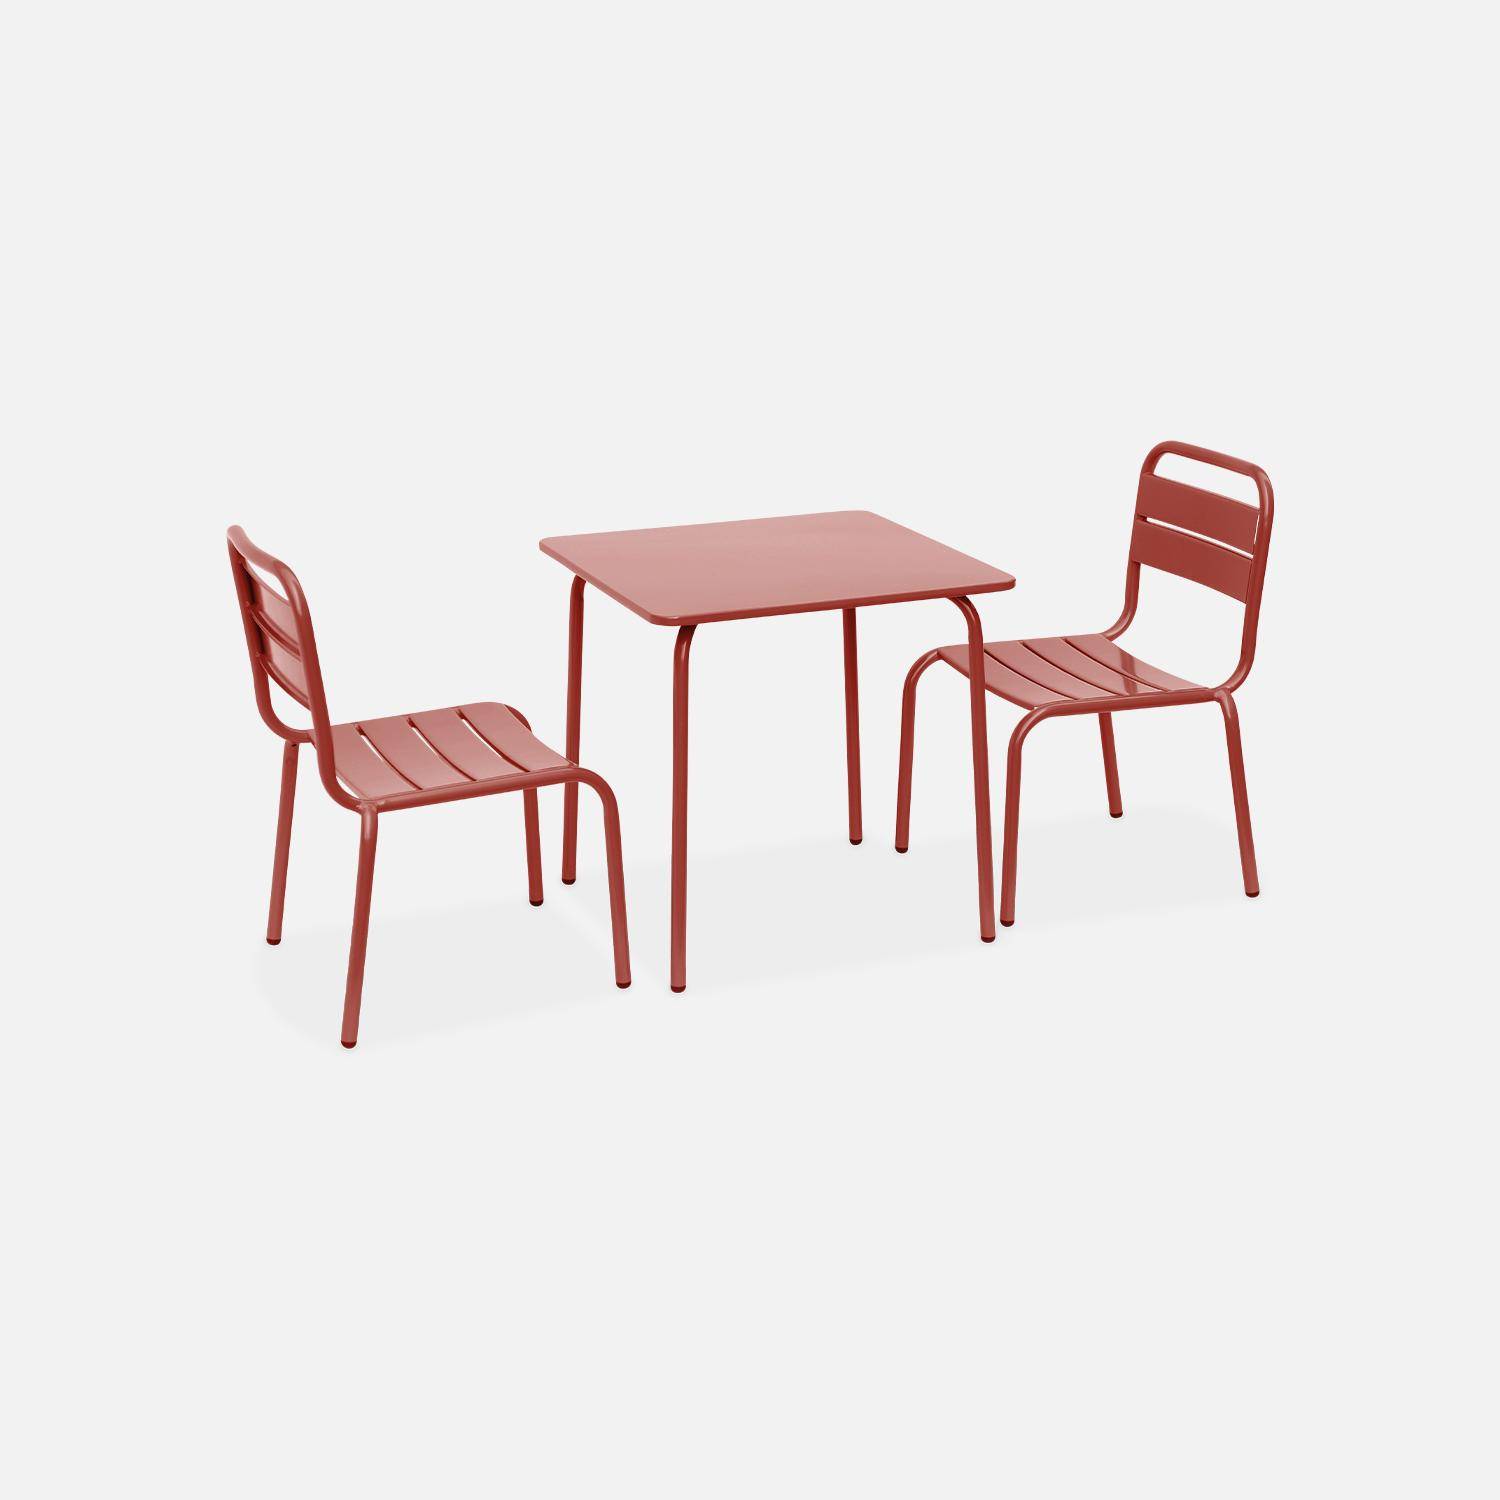 Tisch 48x48cm und 2 Stühle für Kinder, terrakotta, 48x48cm, für draußen verwendbar - Anna,sweeek,Photo3